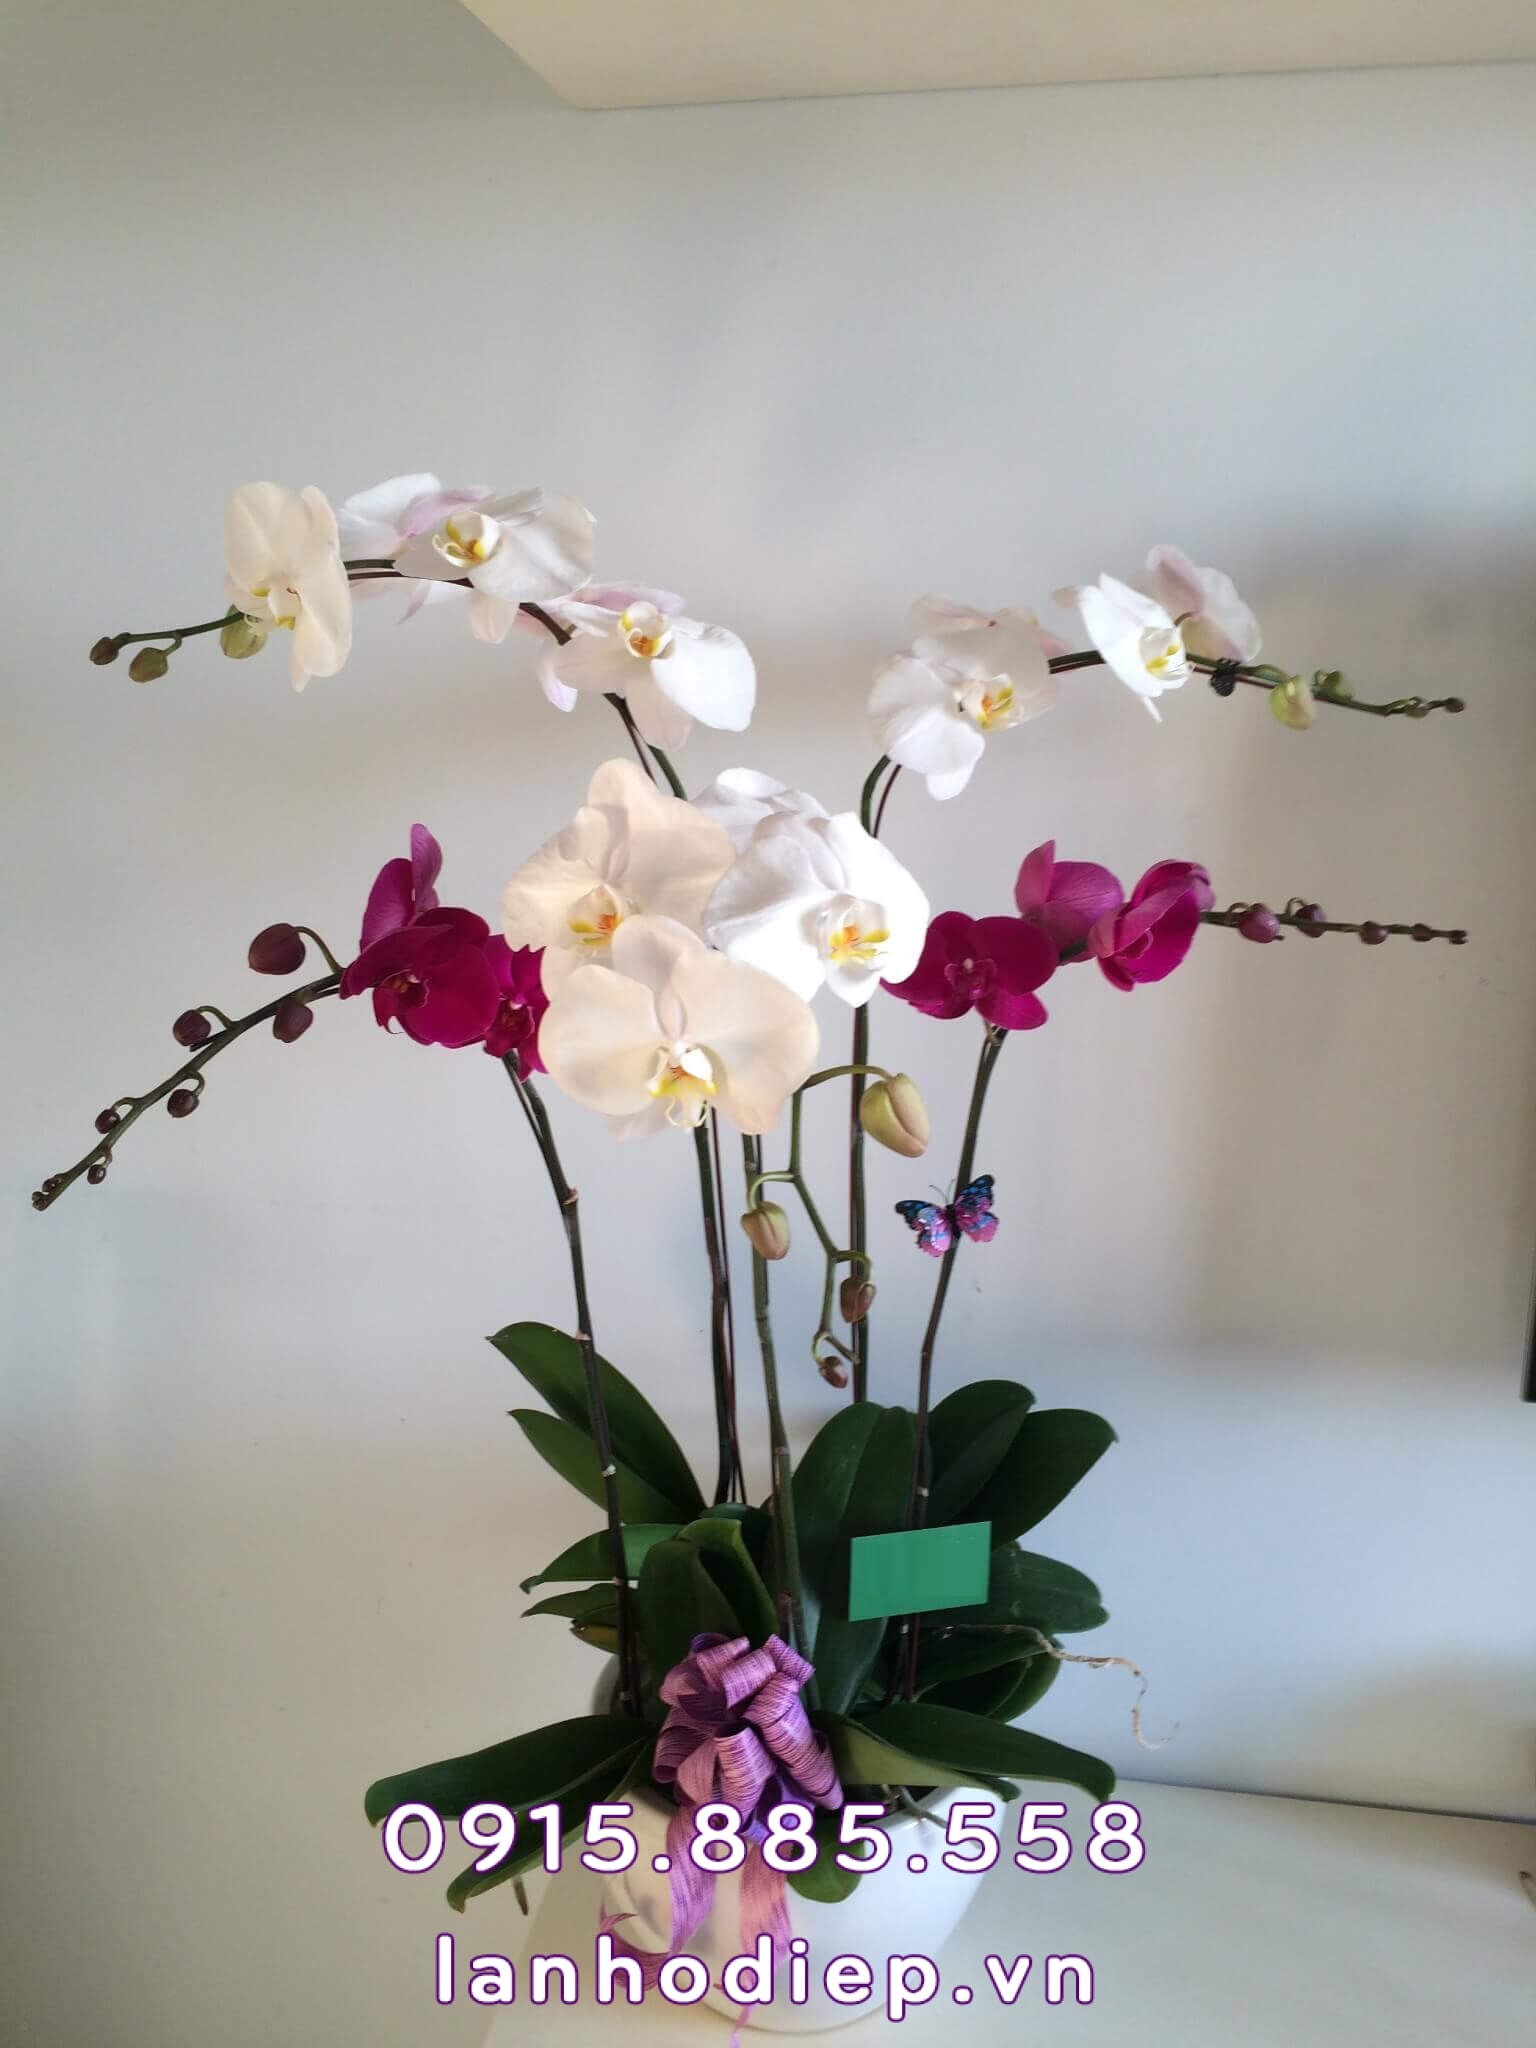 è specializzato in orchidee ad Hanoi